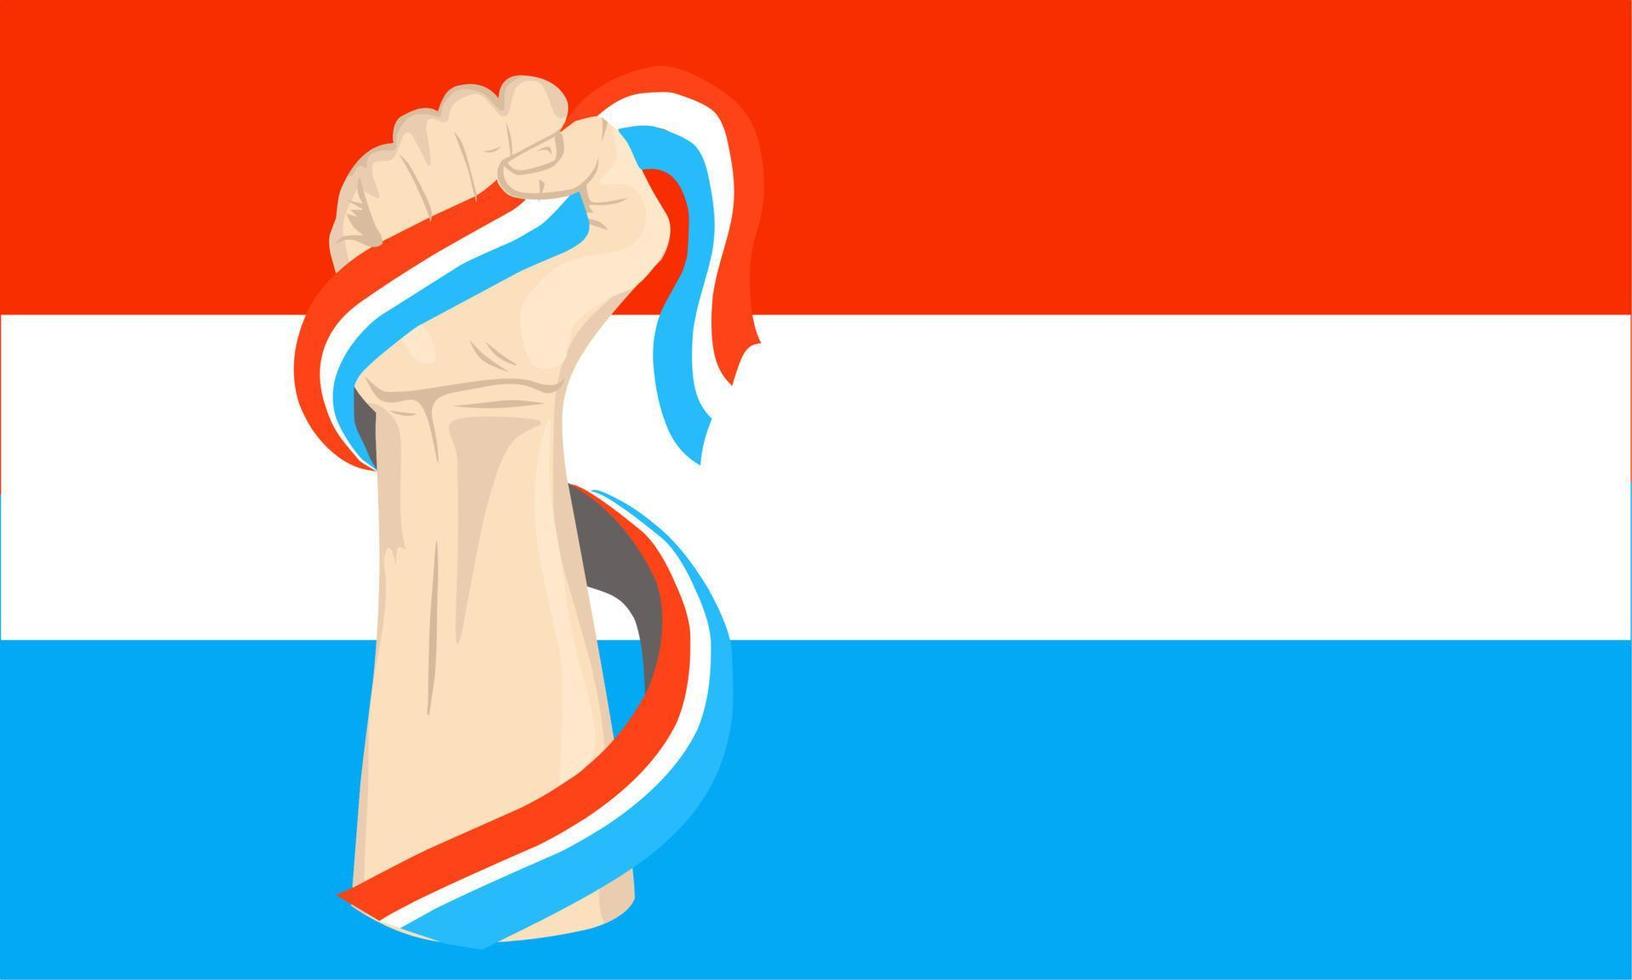 Illustrationsvektorgrafik des luxemburgischen Unabhängigkeitstags mit der Hand, die die luxemburgische Flagge hält. perfekt für Feierlichkeiten zum Unabhängigkeitstag. Banner-Design vektor